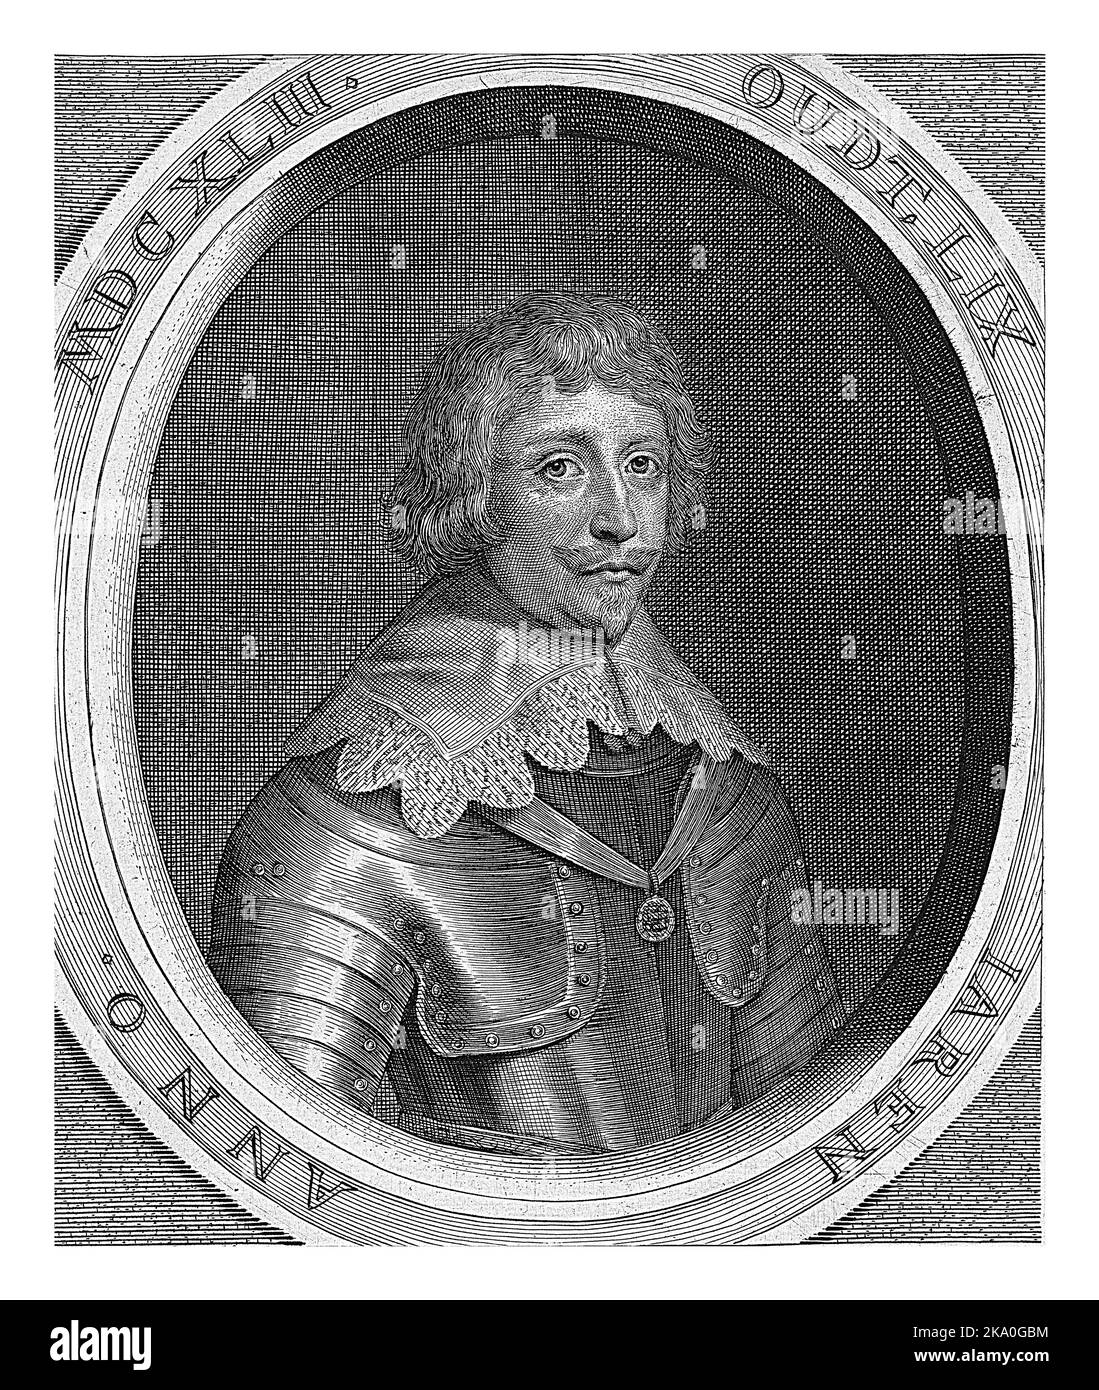 Porträt von Frederik Hendrik, Prinz von Oranien-Nassau. Unter dem Porträt befinden sich Titel und sein Name. Stockfoto